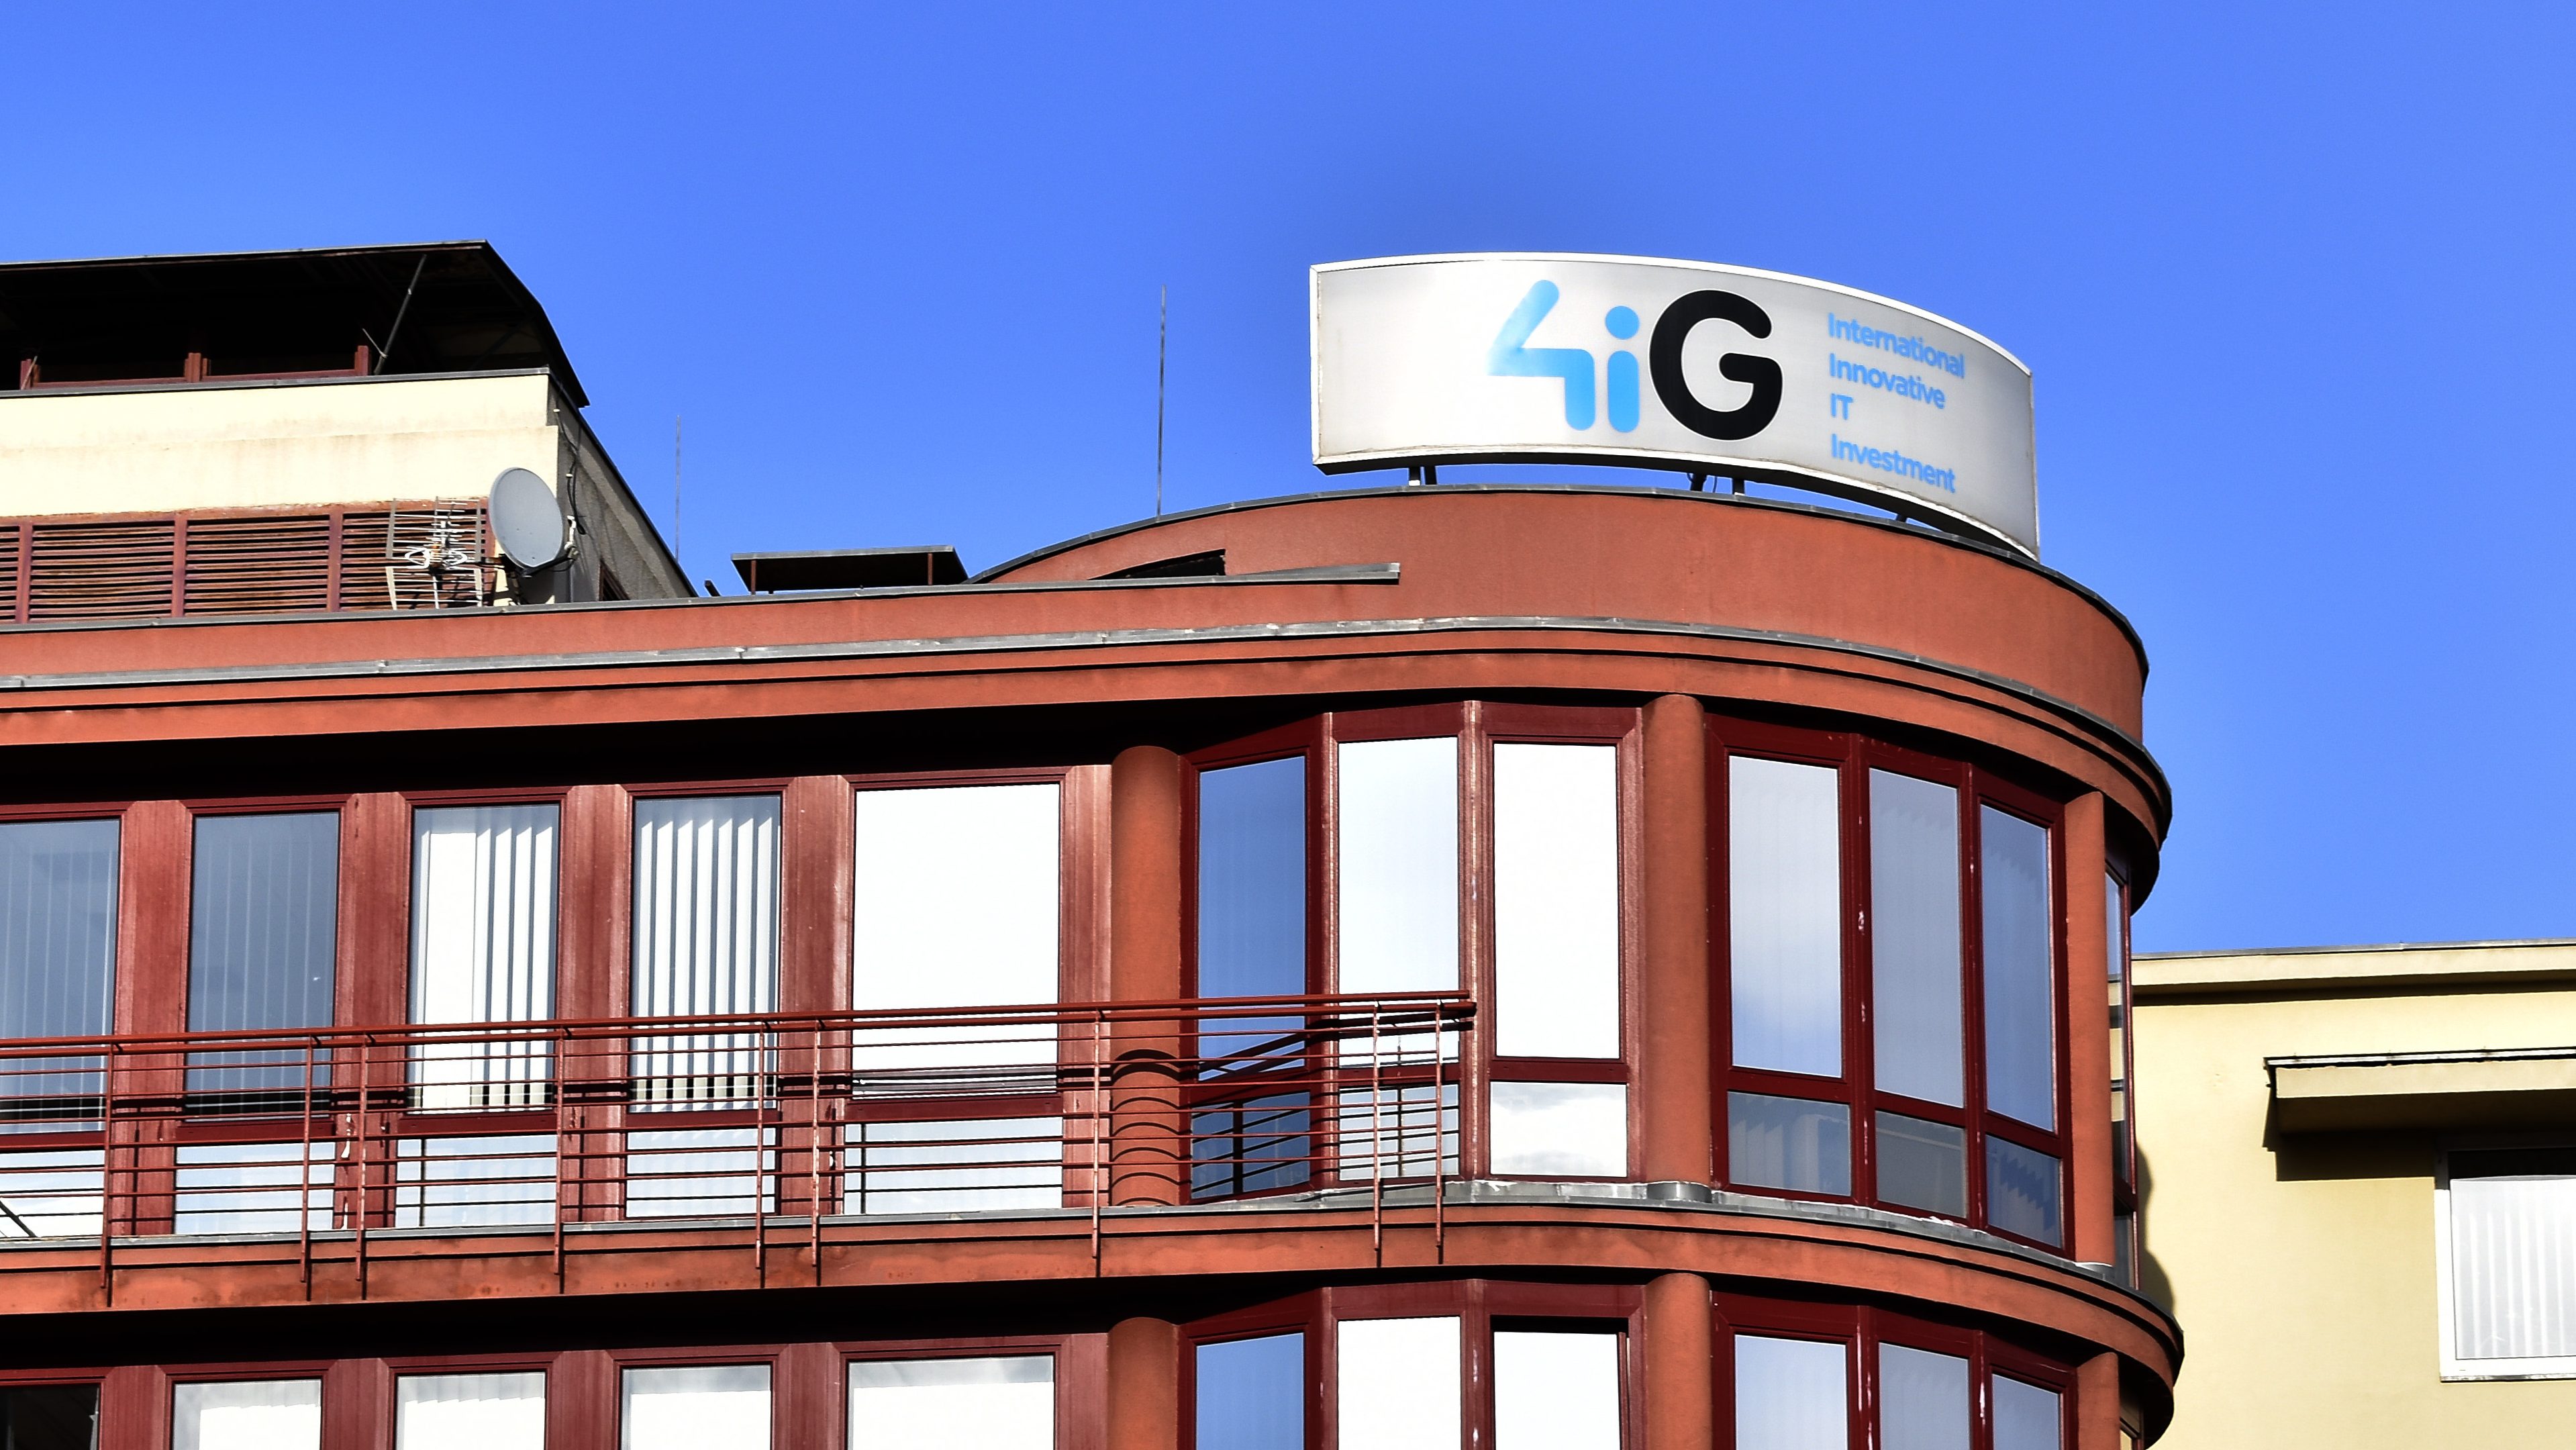 Megvenné a montenegrói Telenort a 4iG